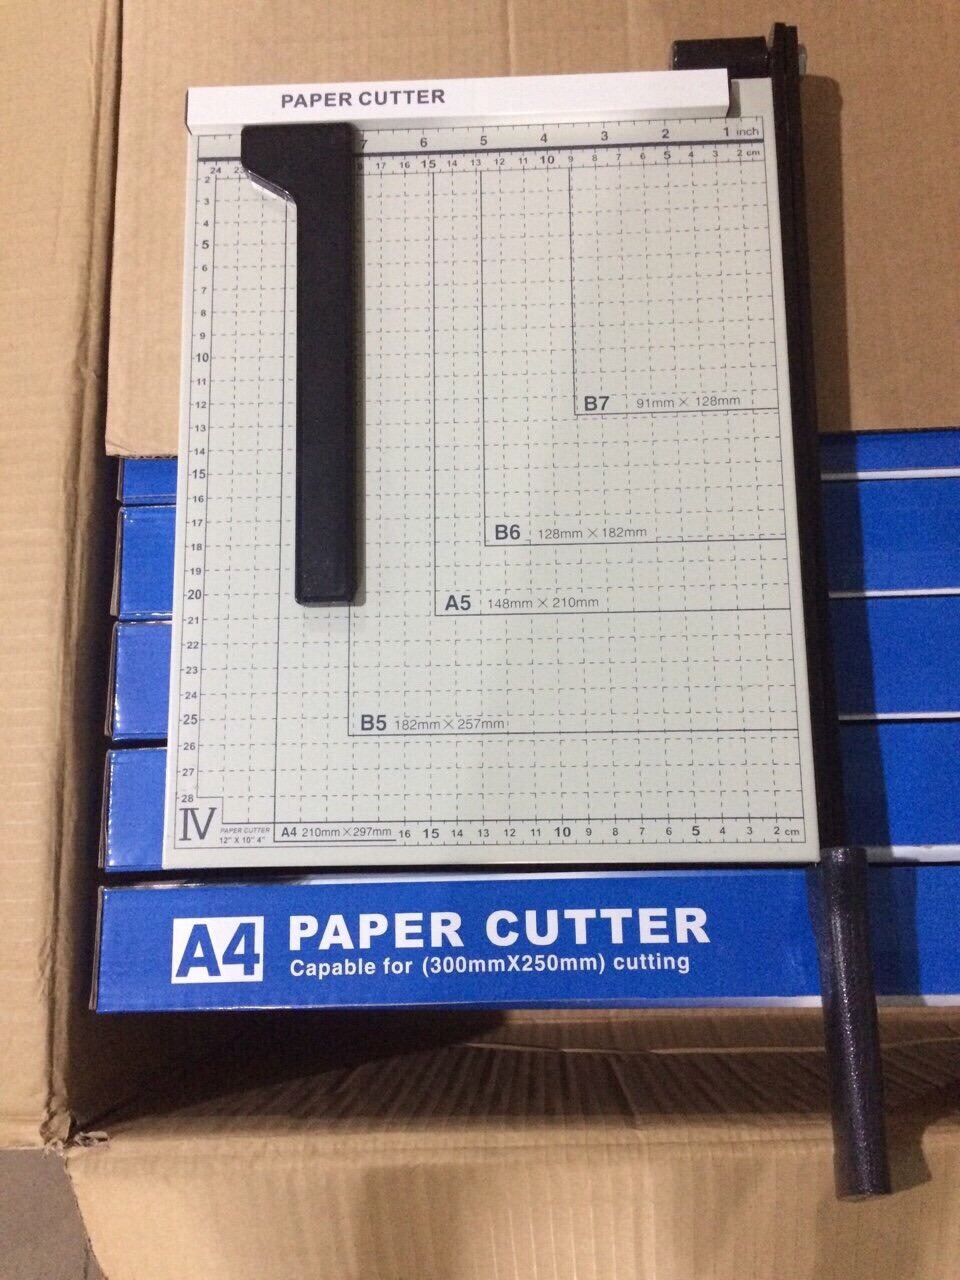 [HCM]Bàn cắt giấy A4 kim loại gọn nhẹ sử dụng dễ dàng cam kết sản phẩm y hình